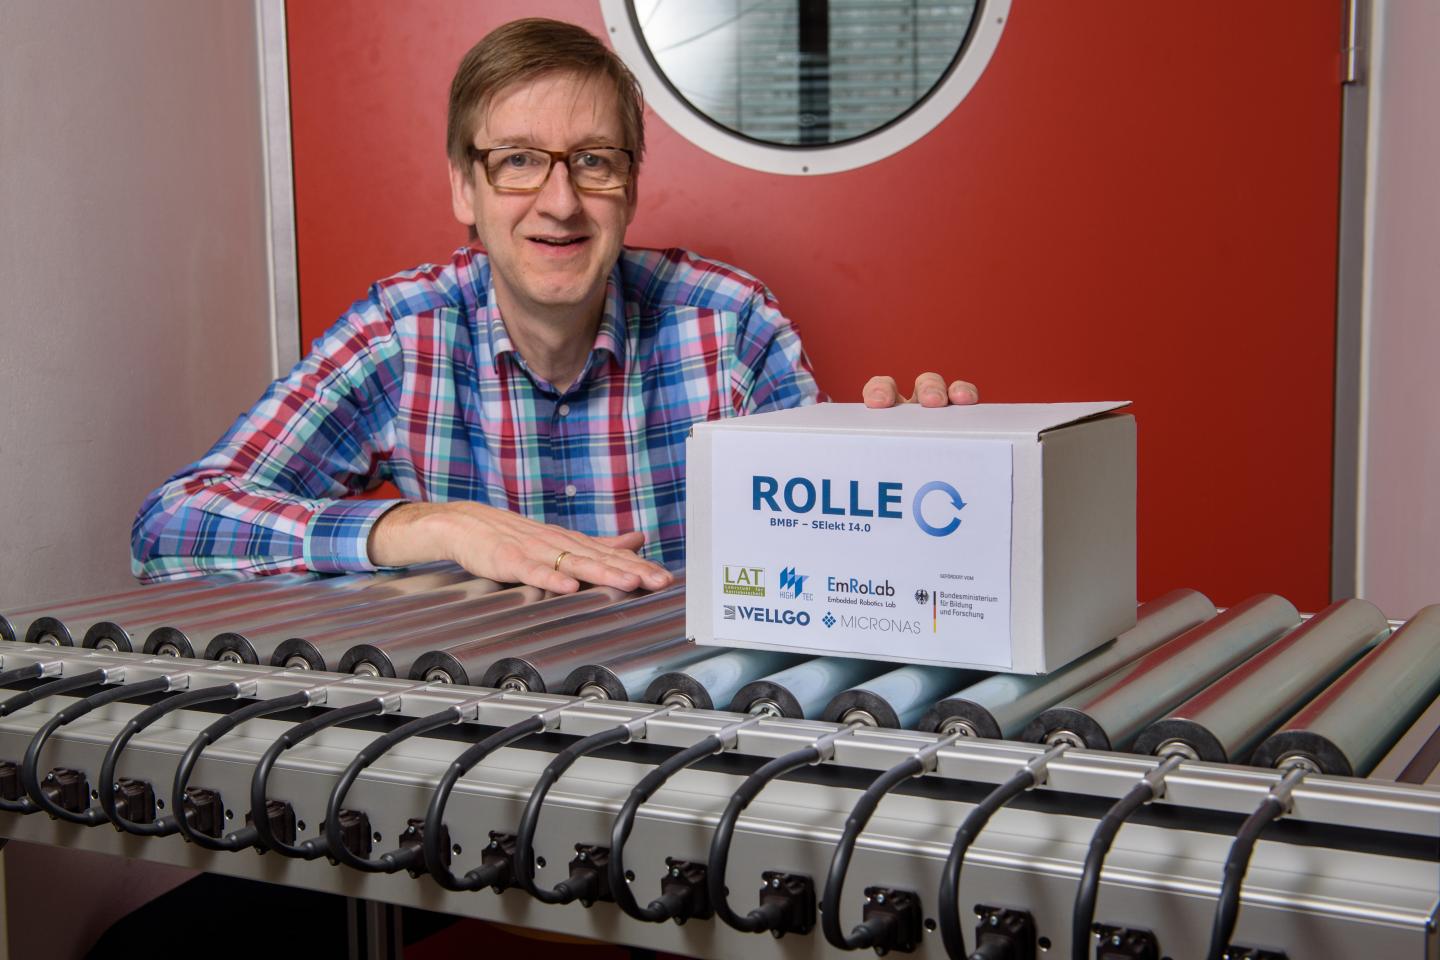 Hannover Messe: Forwards, Backwards, Faster, Slower... Smart Conveyor Rollers Help Optimize Parcel L